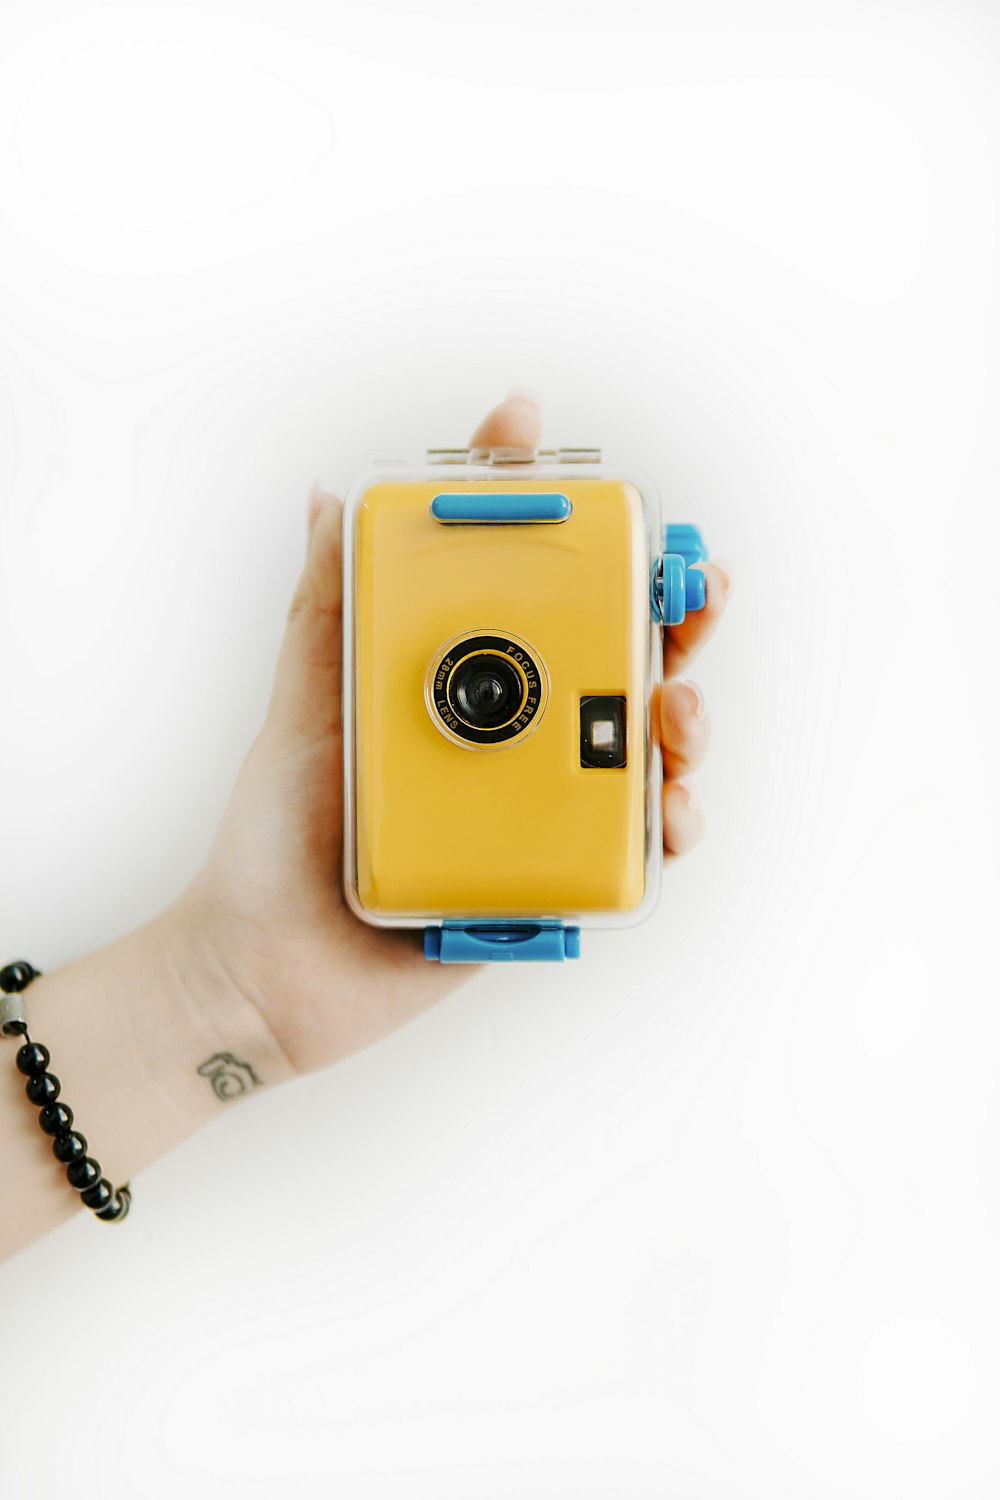 Fotocamera gialla e blu